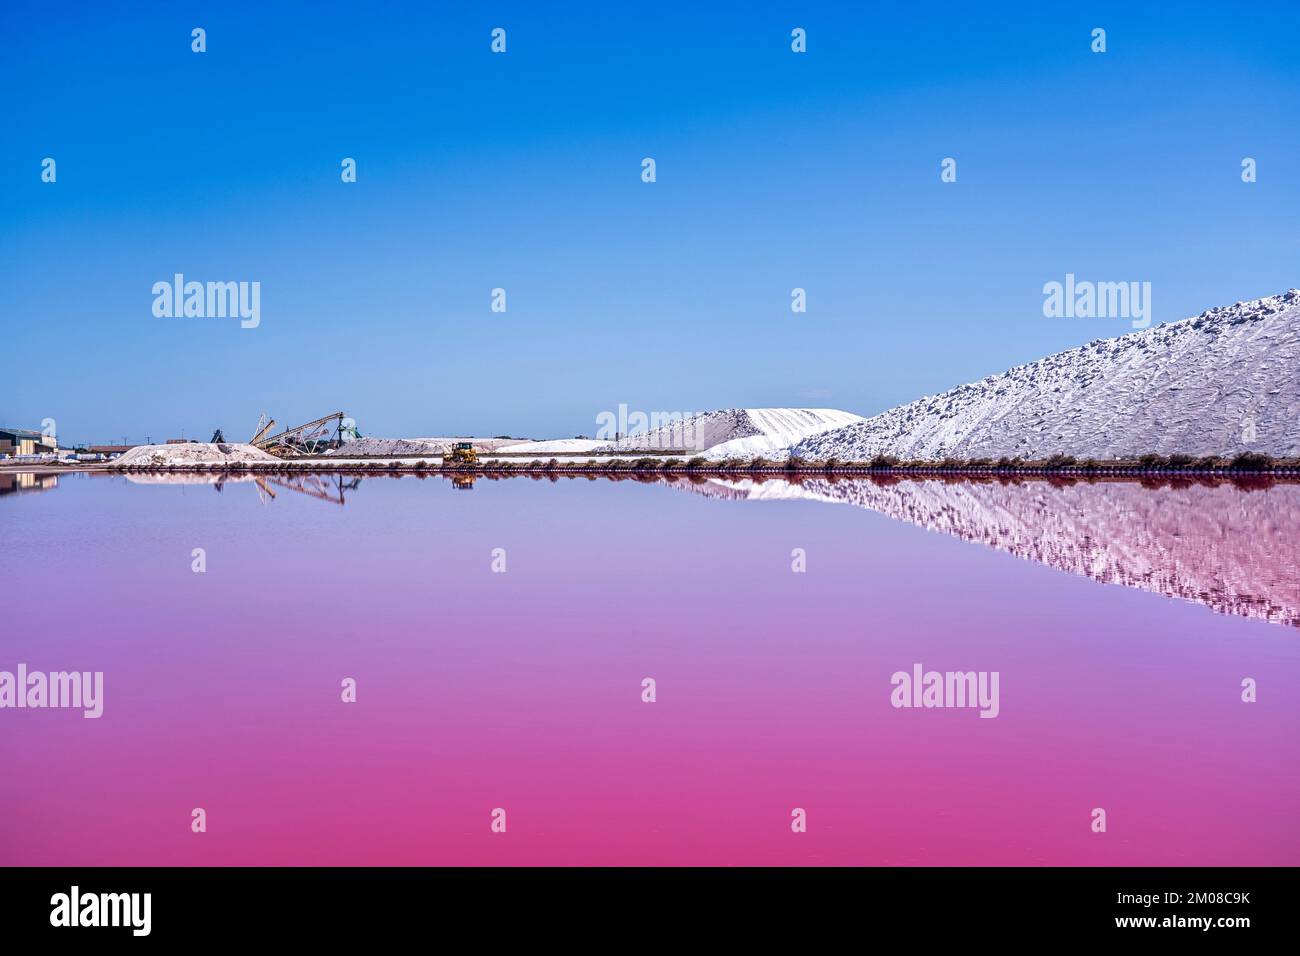 Die Salzproduktion, die rosafarbene Lagune und die Hügel im Mittelmeer befinden sich in Aigues-Mortes. Camargue, Frankreich. Fotos in hoher Qualität Stockfoto